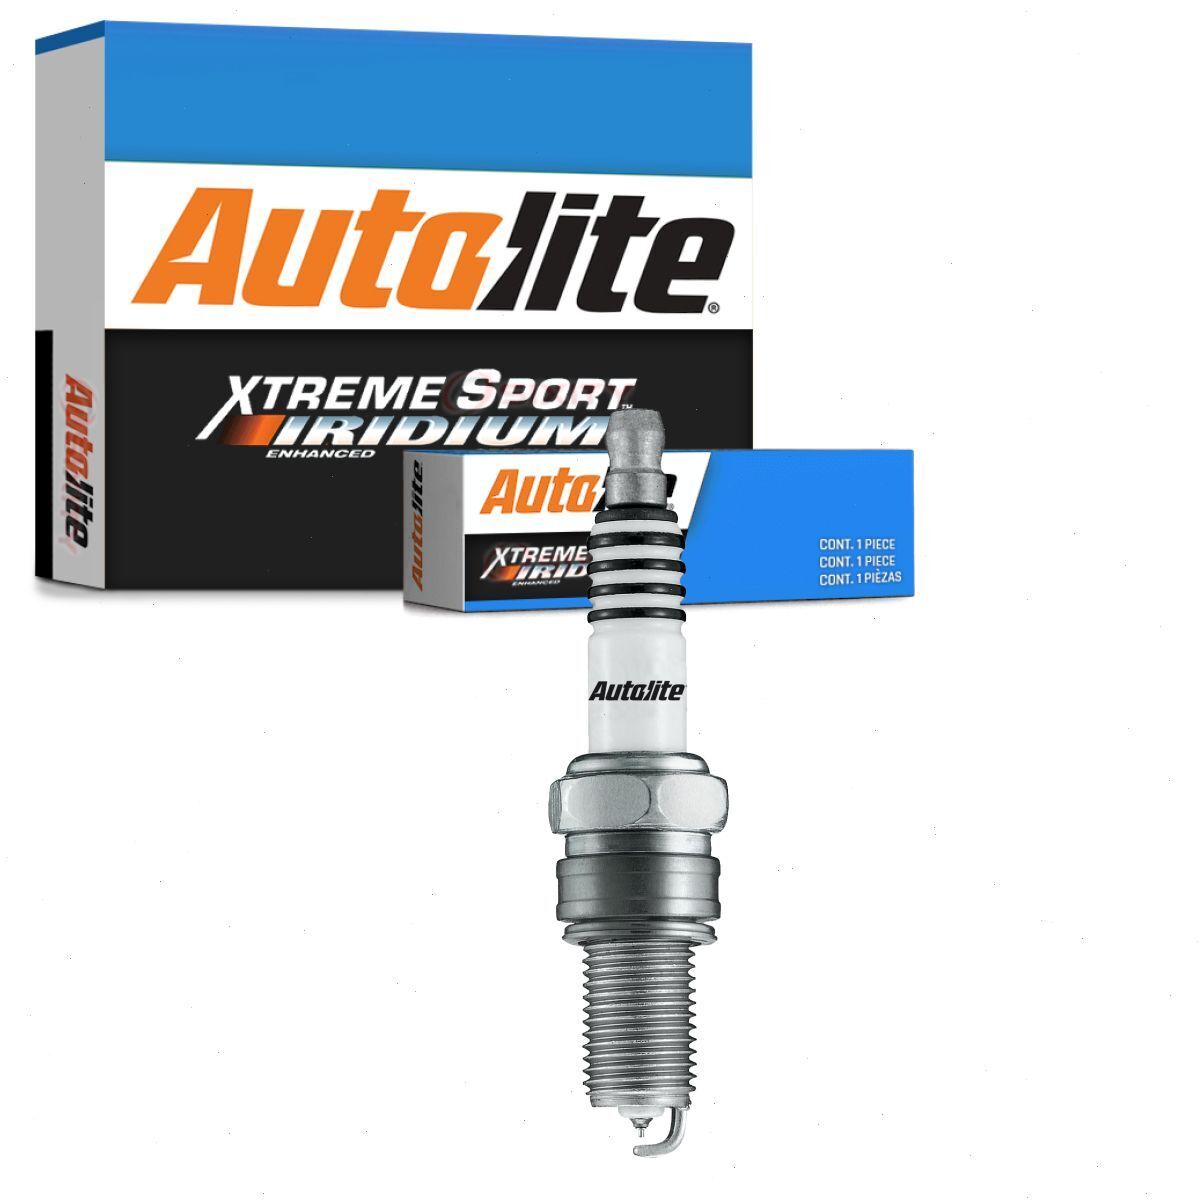 Autolite Xtreme Sport XS4164 Spark Plug for W20 HG22C 810 5686 3179 1068 yj